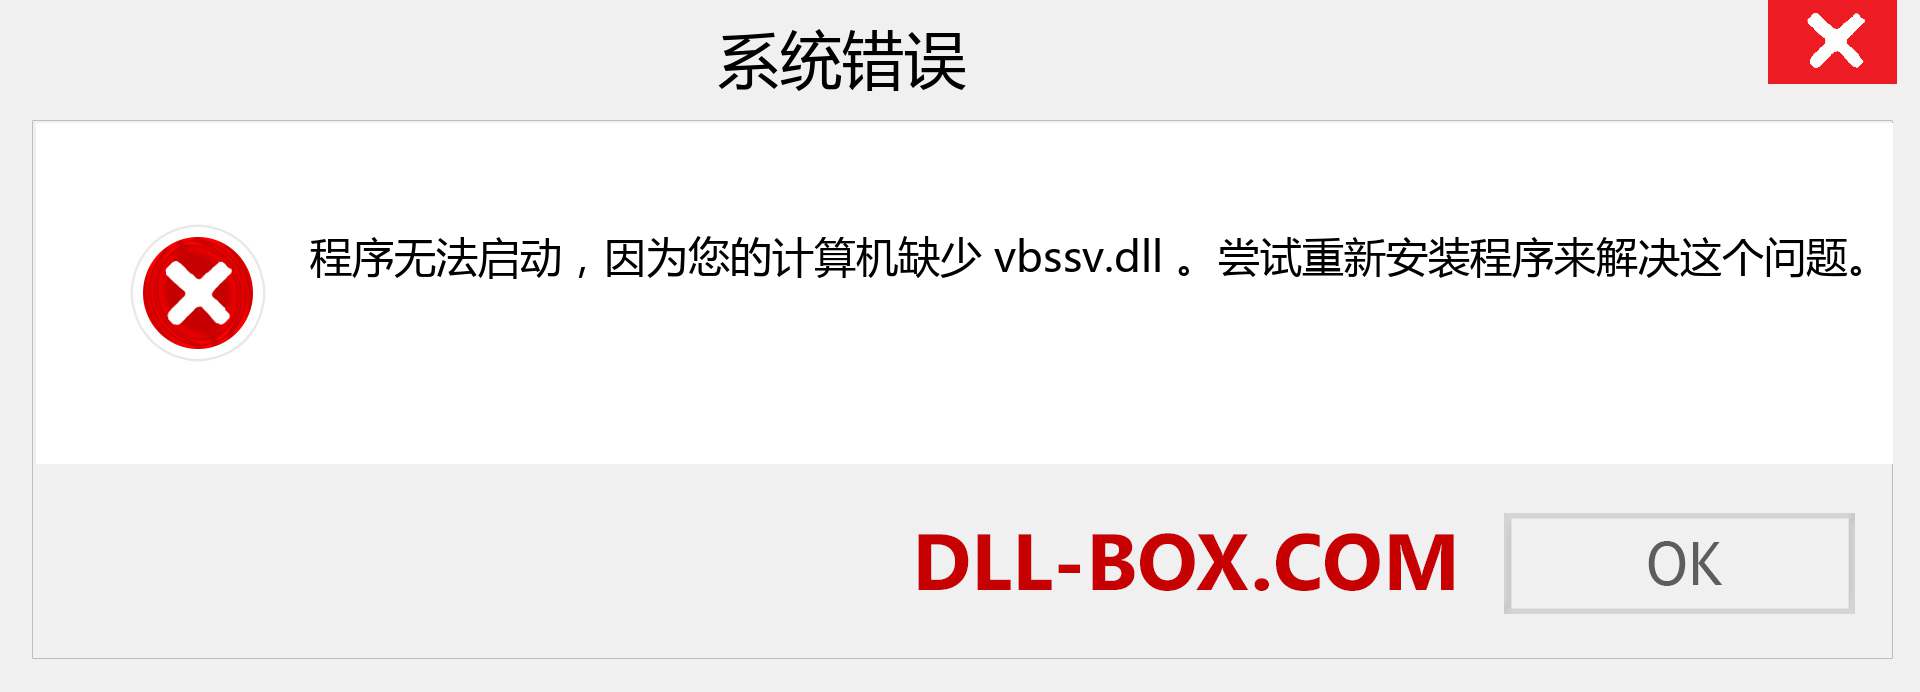 vbssv.dll 文件丢失？。 适用于 Windows 7、8、10 的下载 - 修复 Windows、照片、图像上的 vbssv dll 丢失错误